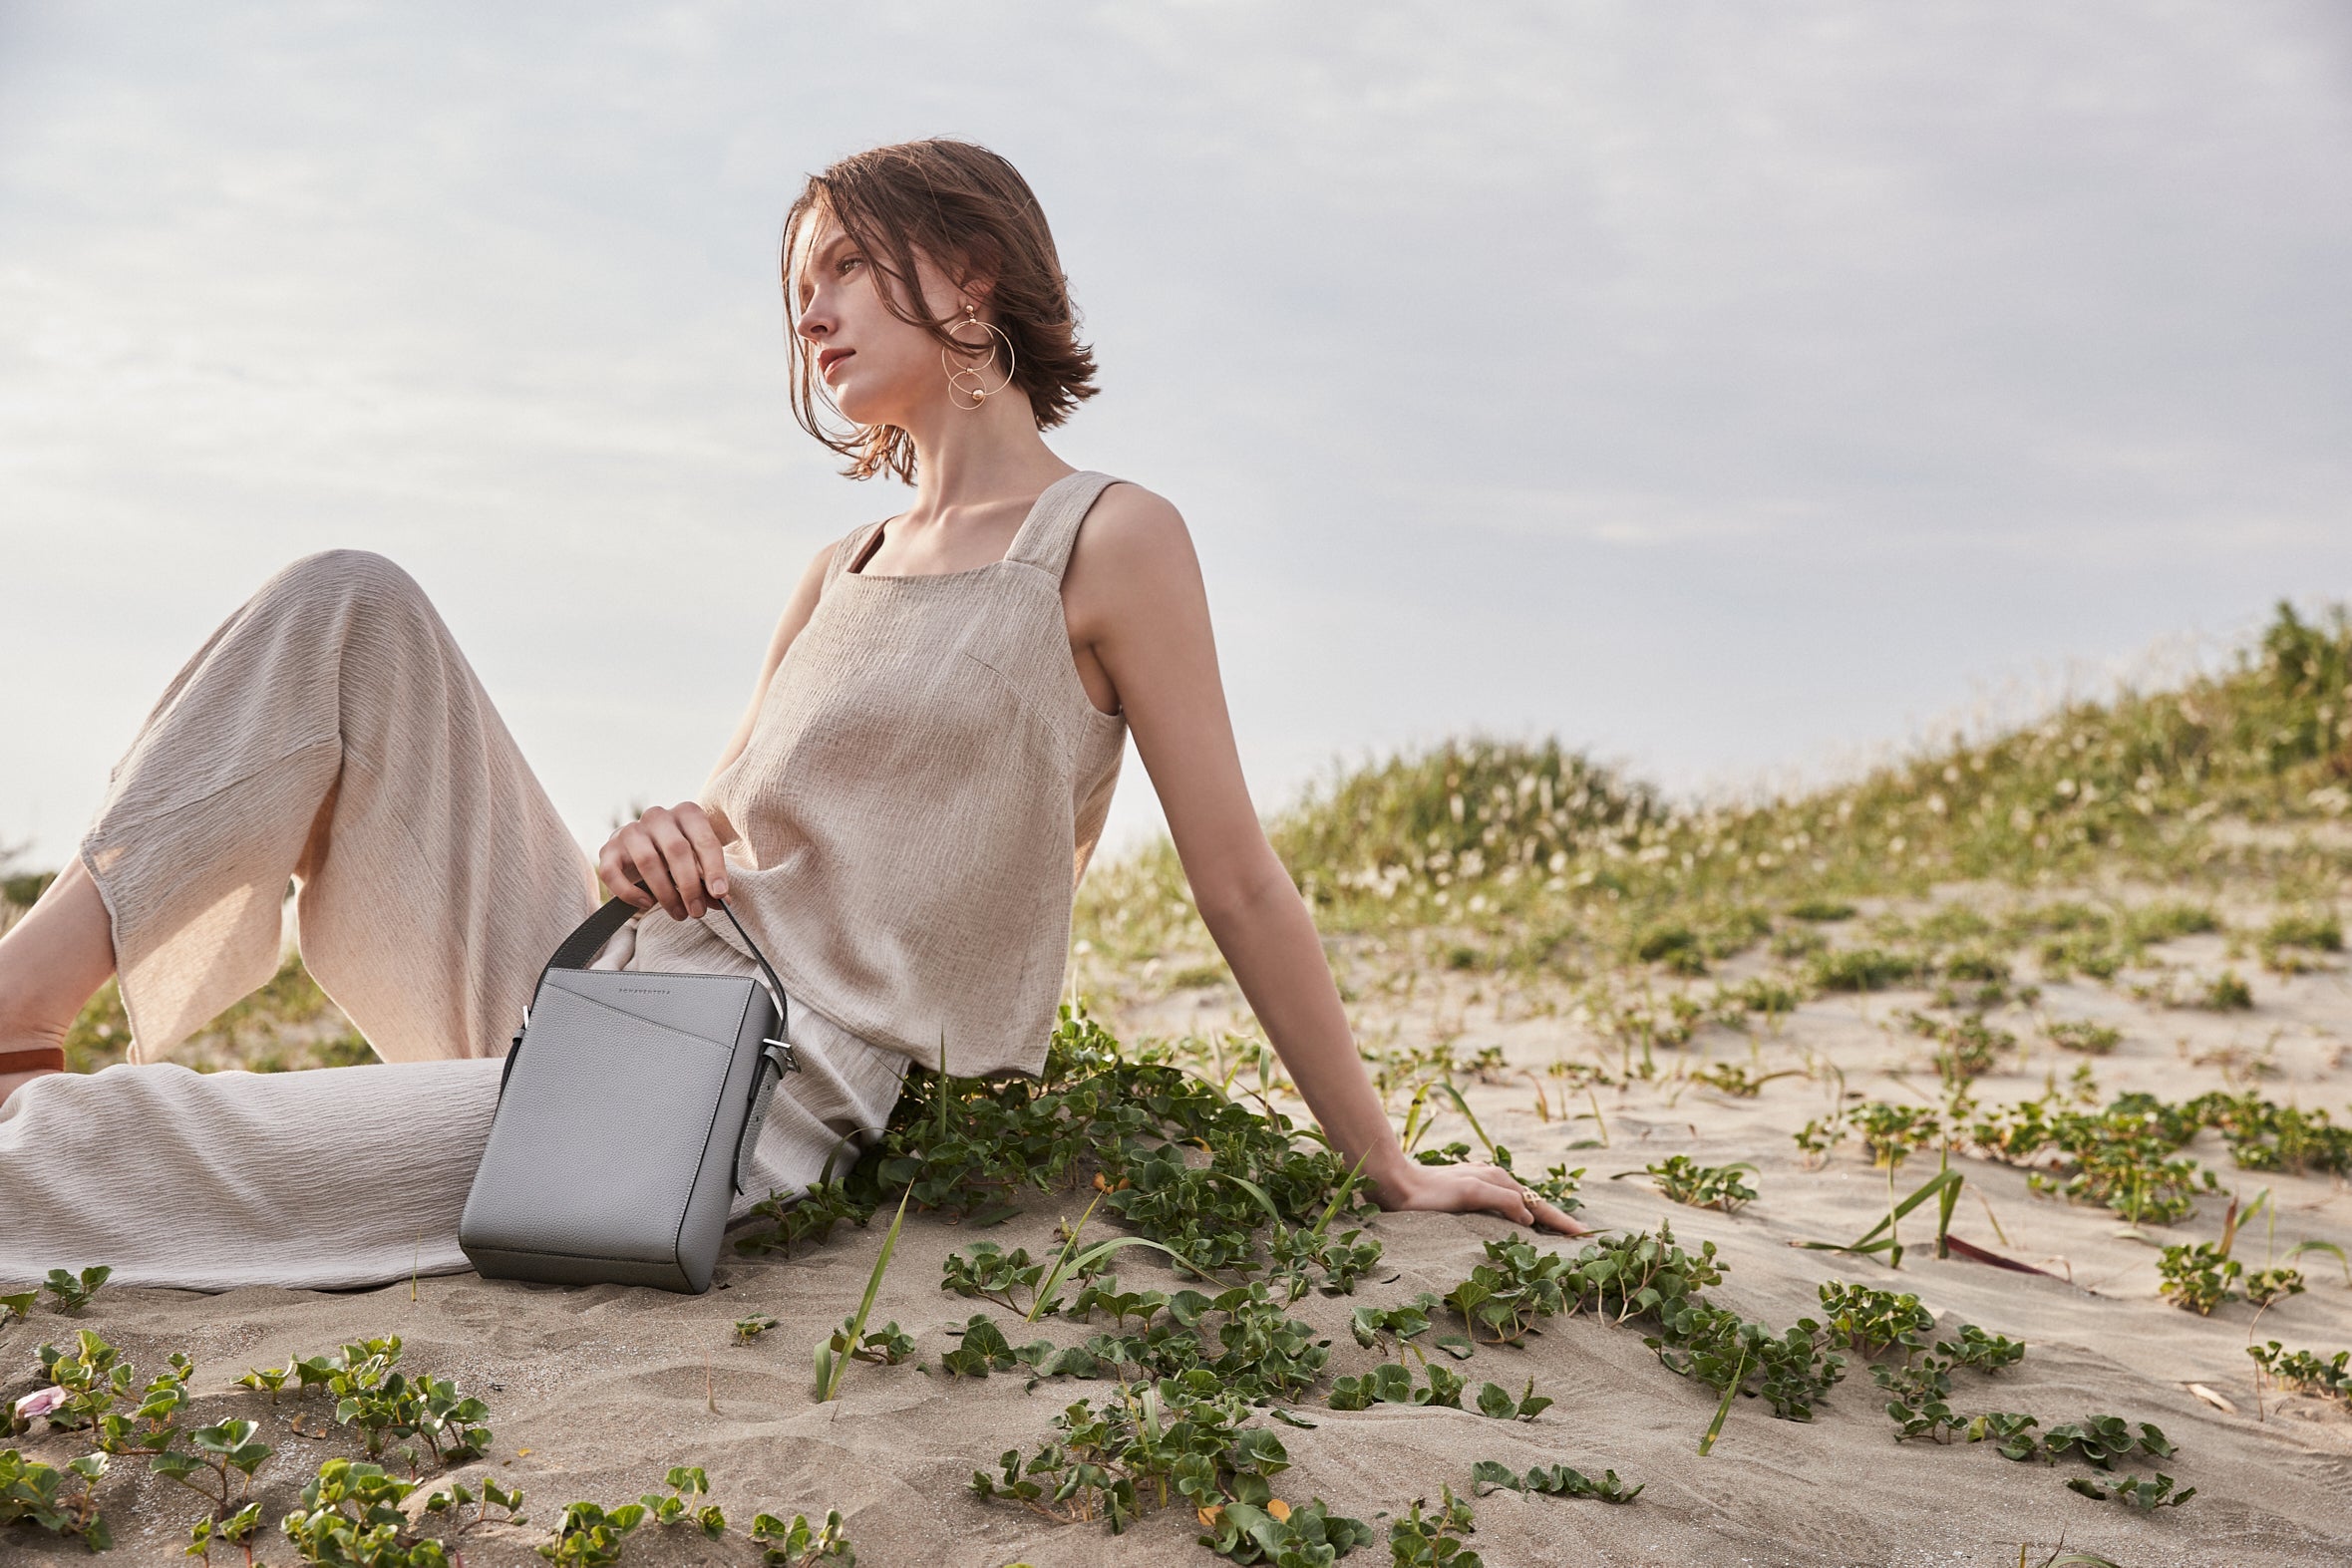 Une femme élégamment vêtue et soucieuse de l'environnement porte sur la plage un sac en cuir durable de la marque BONAVENTURA.